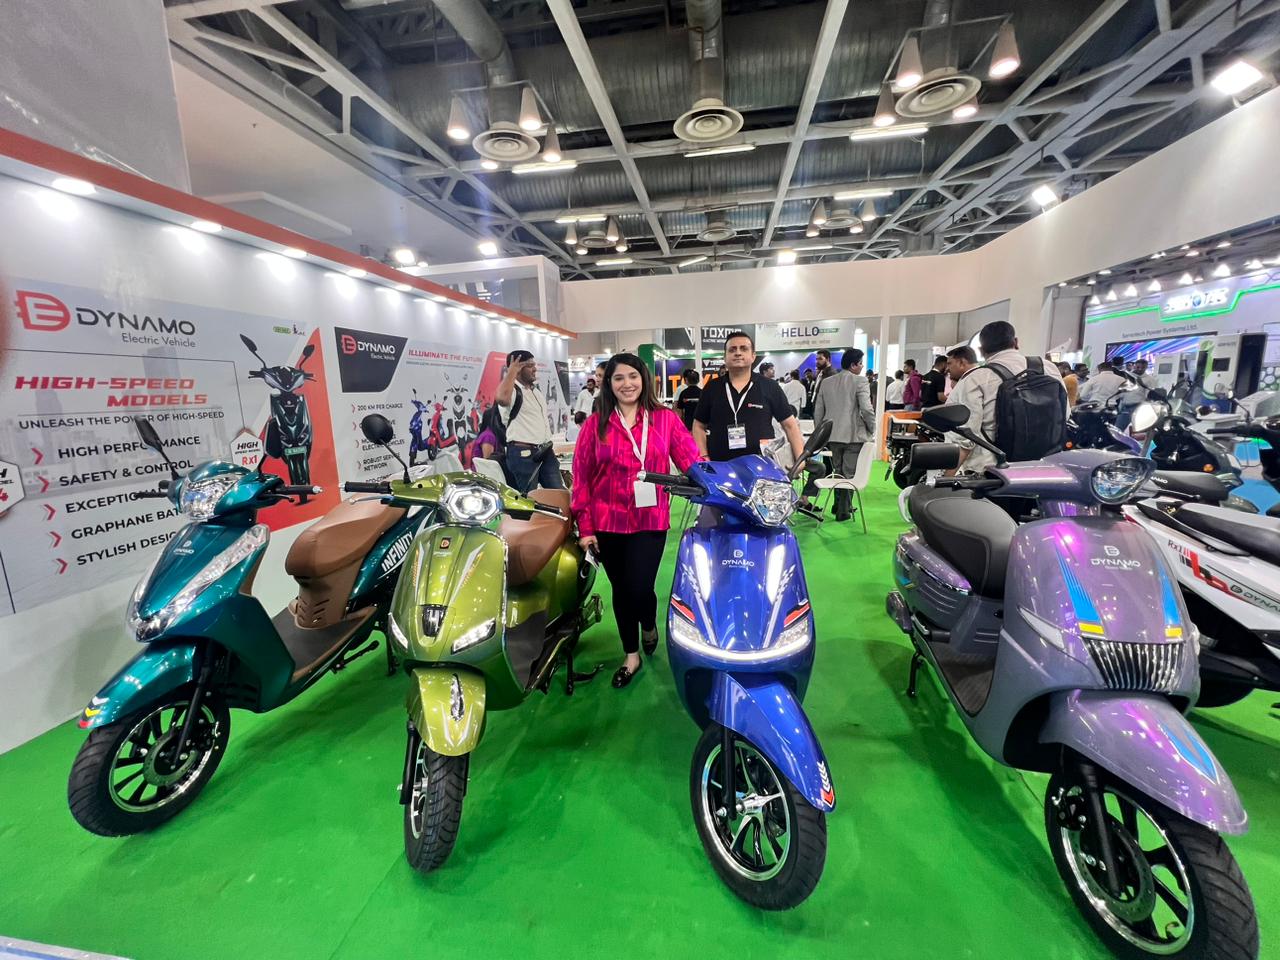 ईवी इंडिया एक्सपो में डायनामो इलेक्ट्रिक ने भारत में लॉन्च की अपनी नई ई-बाईक रेंज